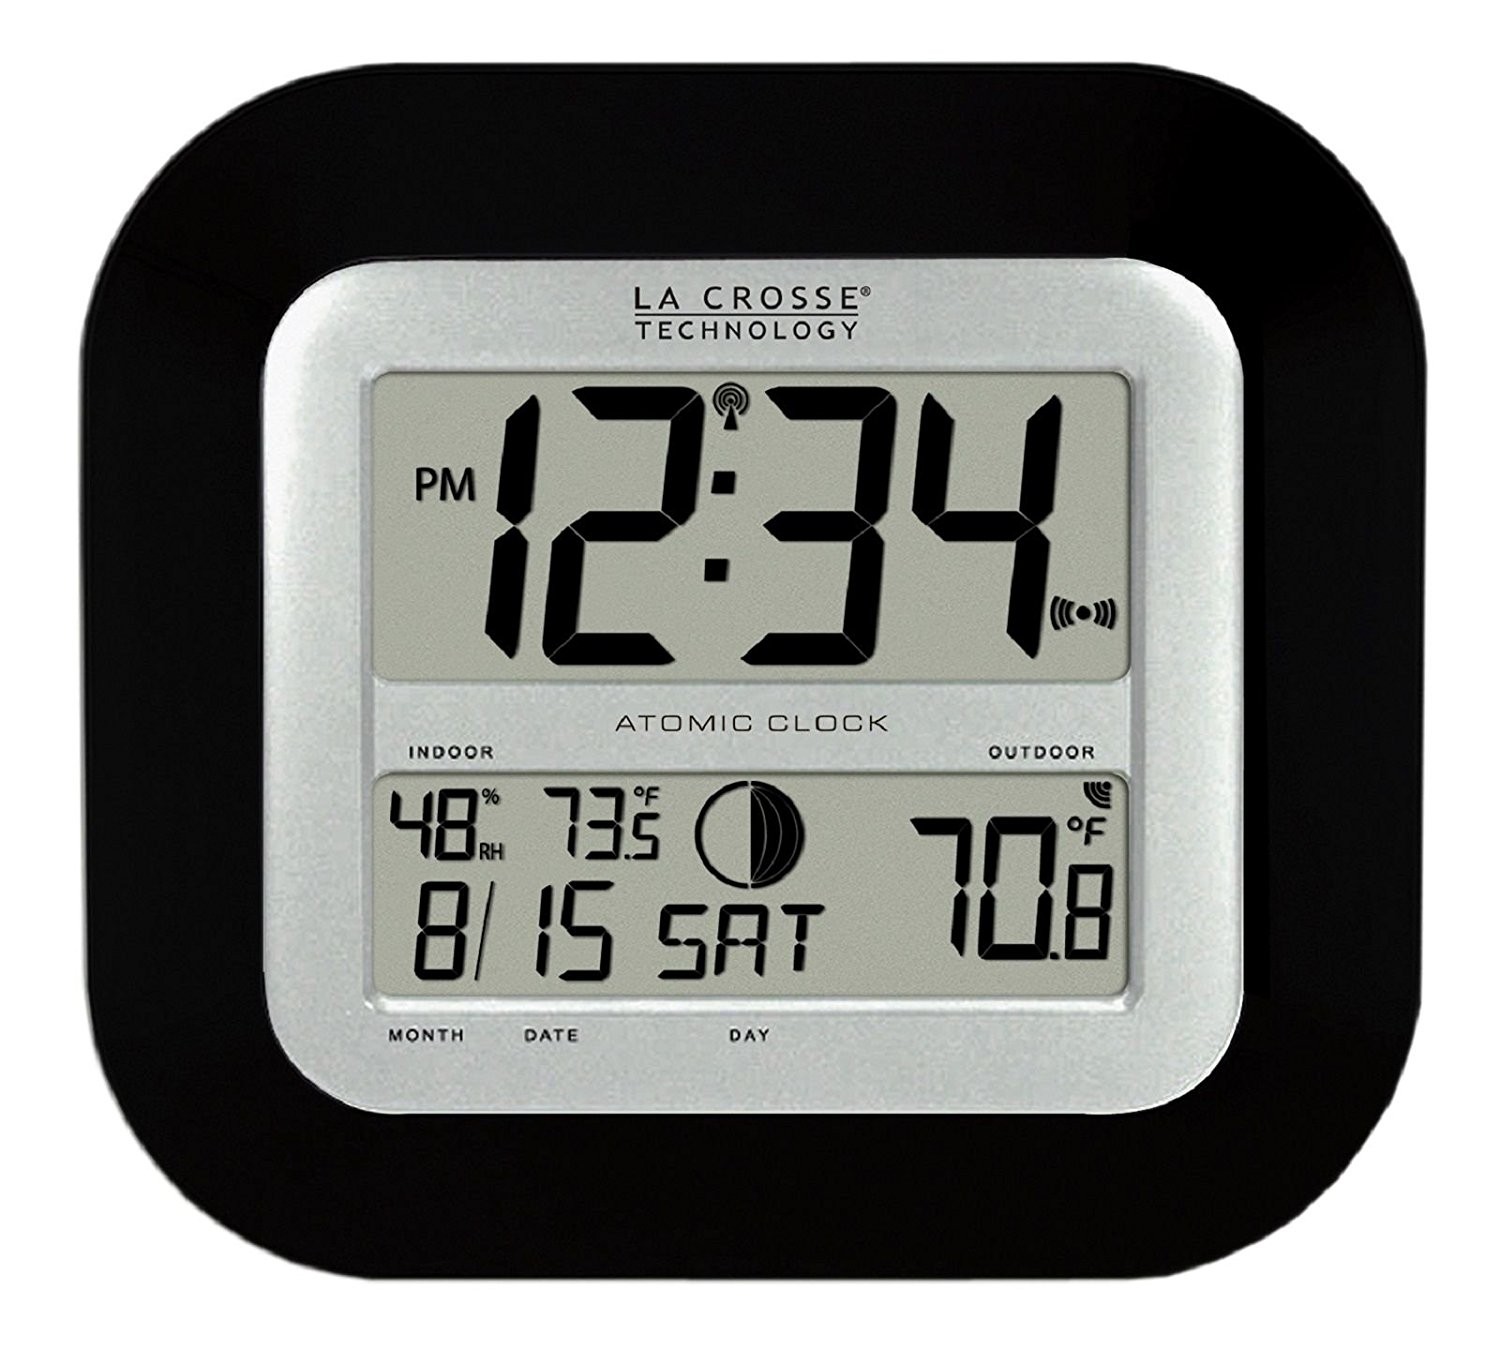 Проекционные часы. La Crosse. Часы la Crosse Technology черно белые с наружным. Out temp